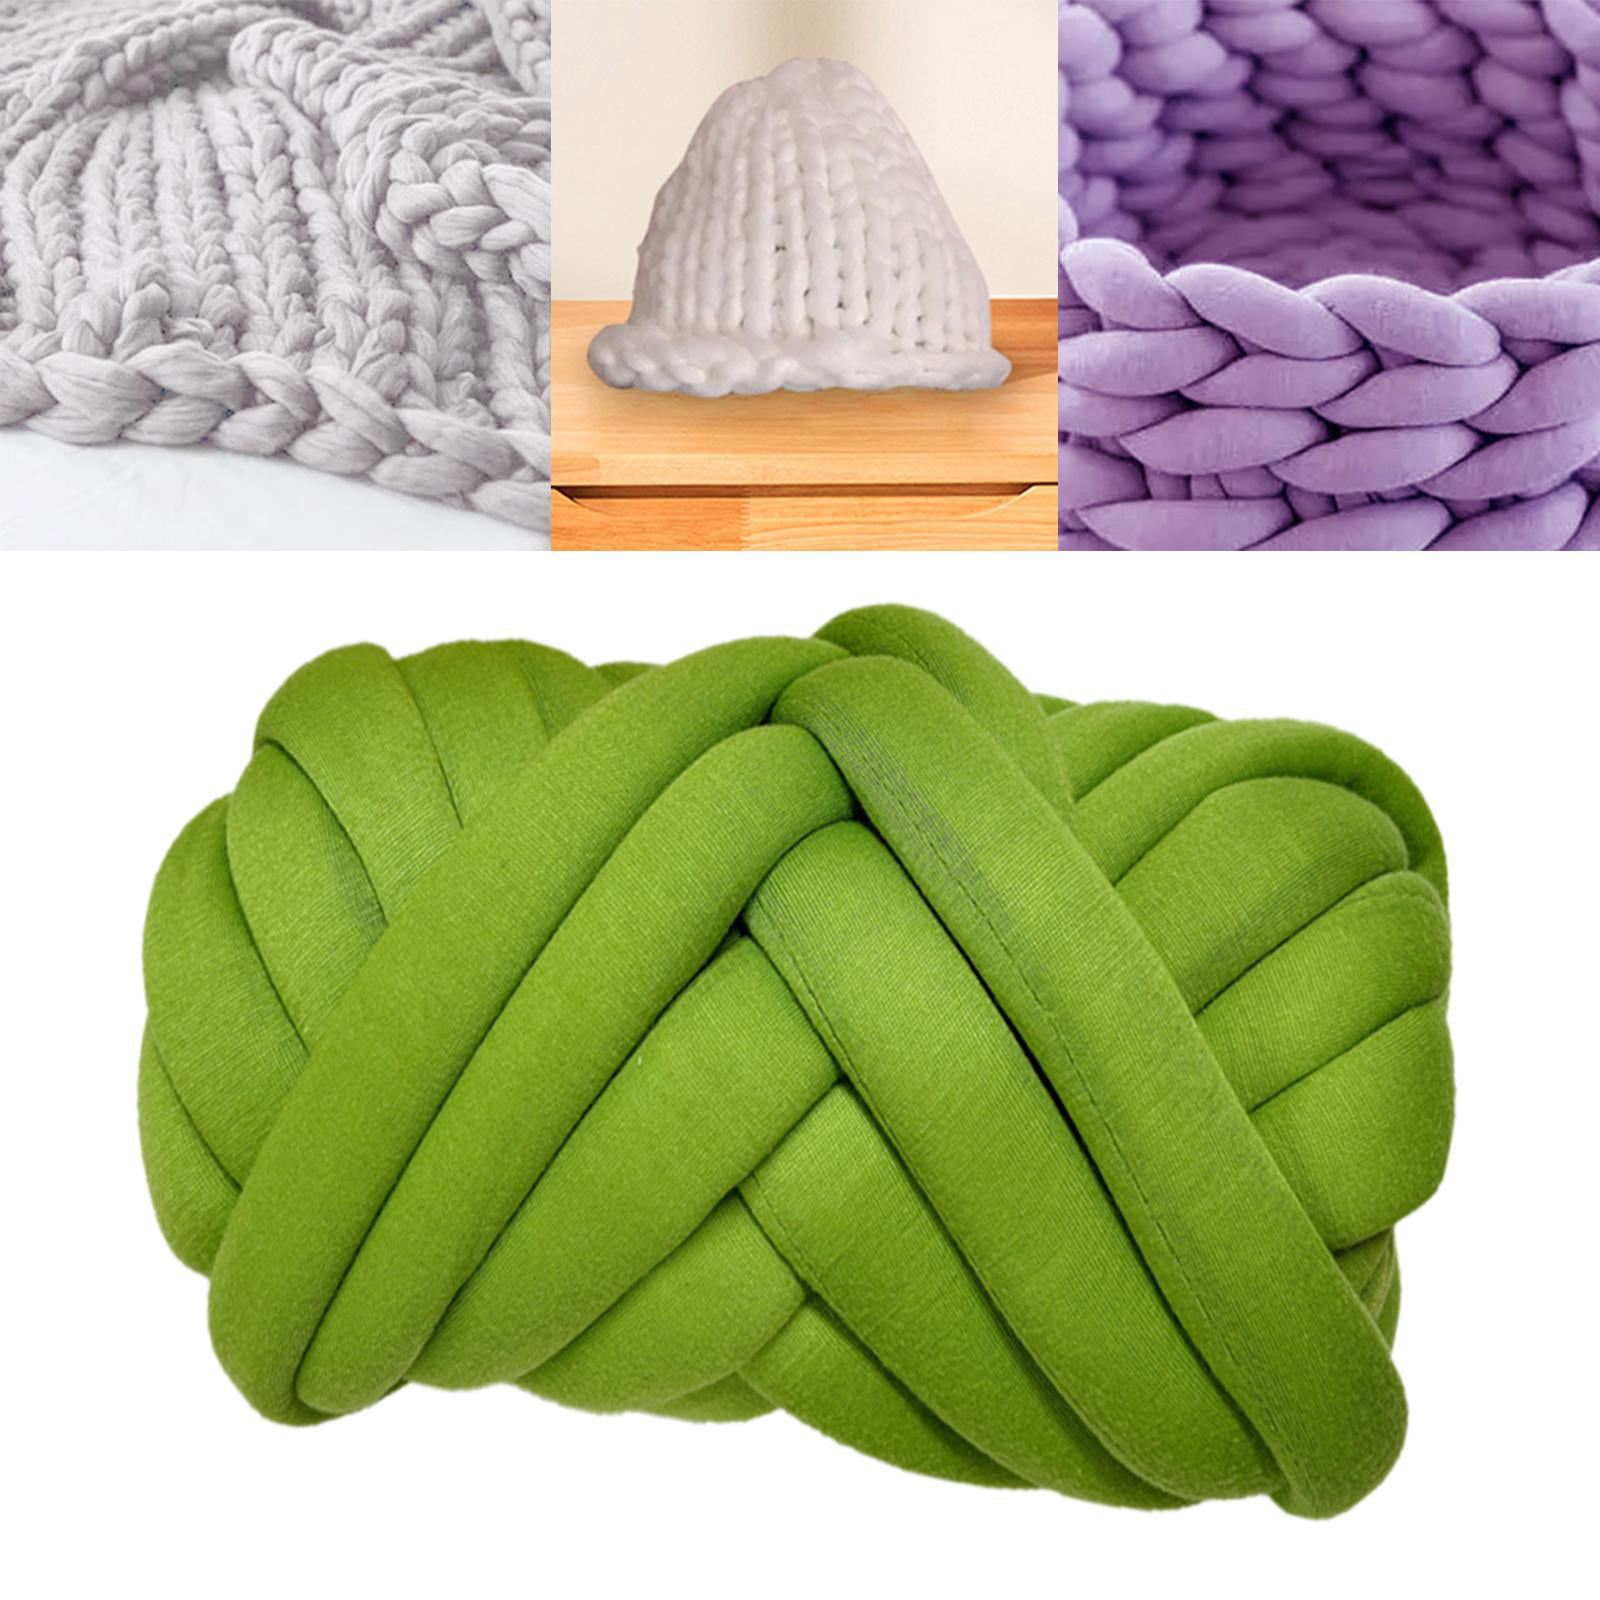 Cotton Yarn, Cotton Tube Yarn, Chunky Knit Yarn, Hand Knitting, Arm Knit  Yarn, Bulky Yarn, Jumbo Yarn, Giant Yarn -  Norway